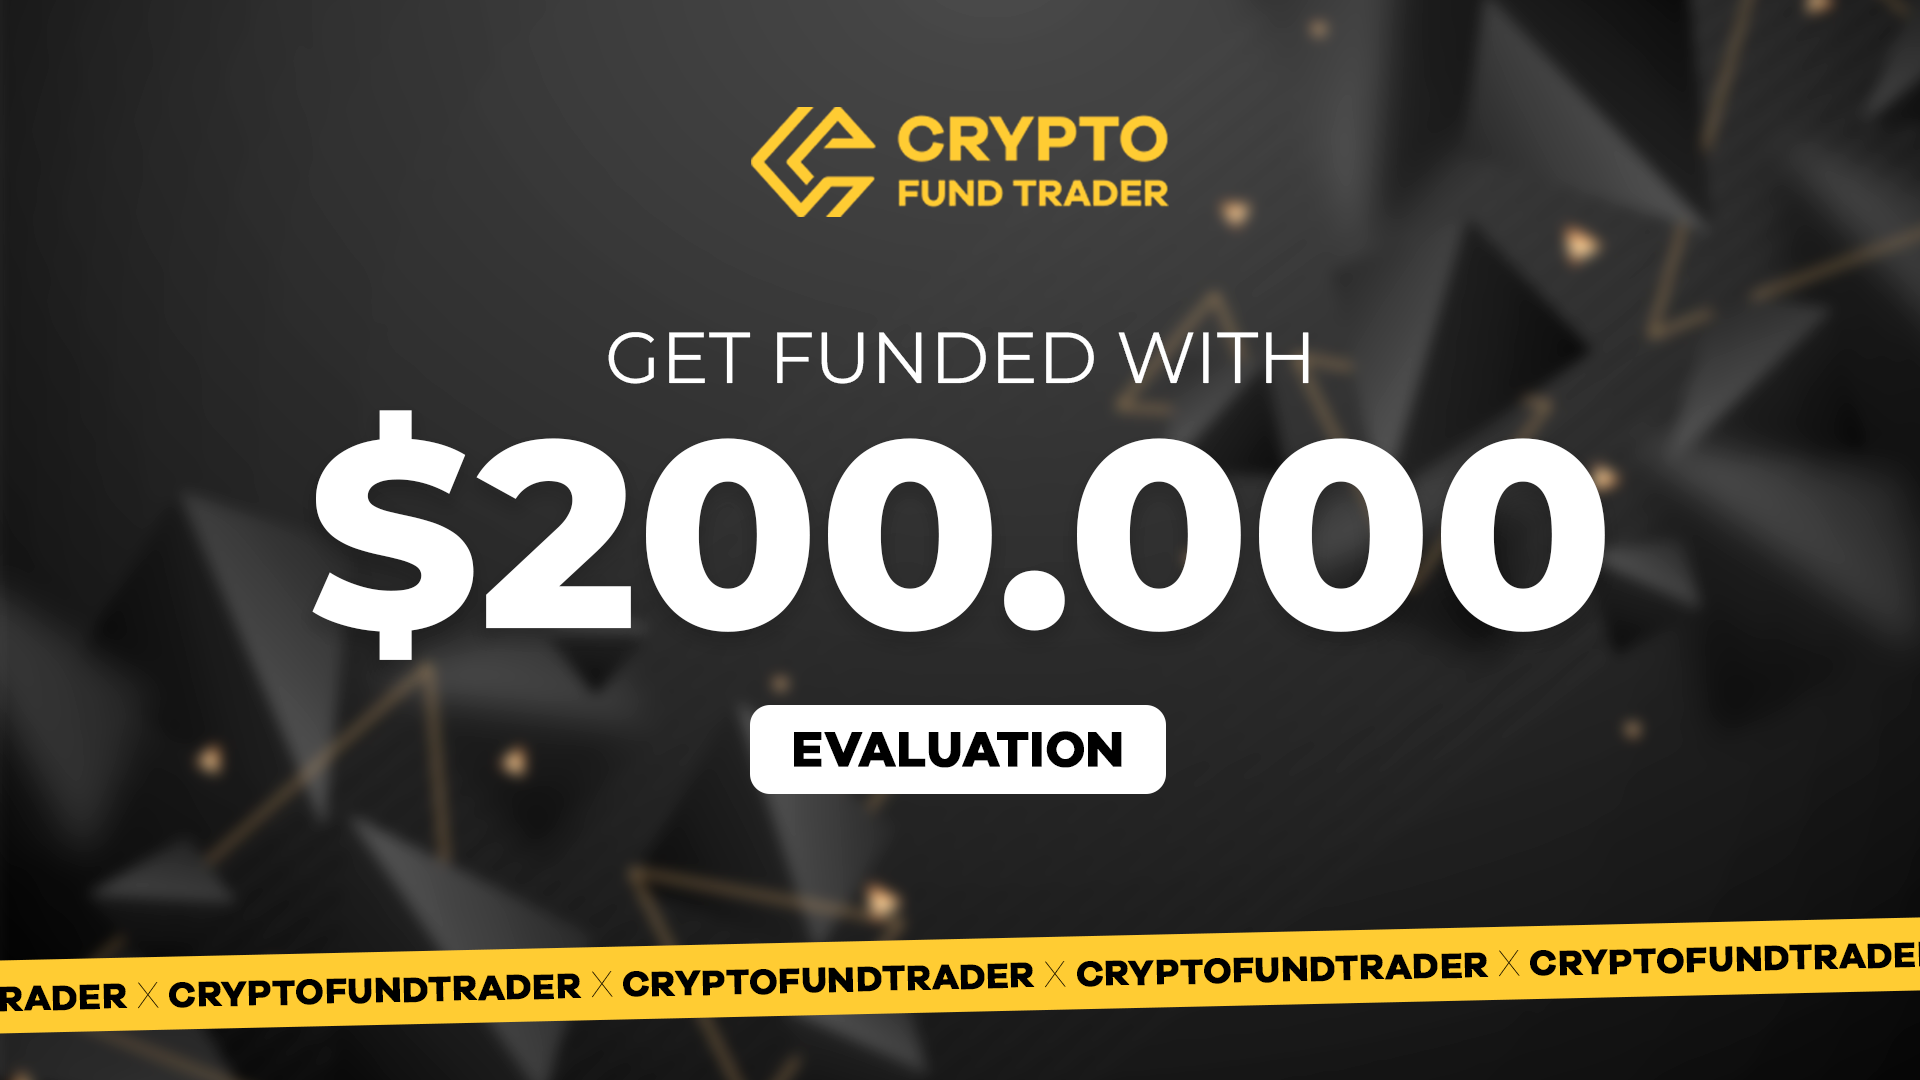 Crypto Fund Trader - $200.000 Evaluation Voucher, 1127.7$